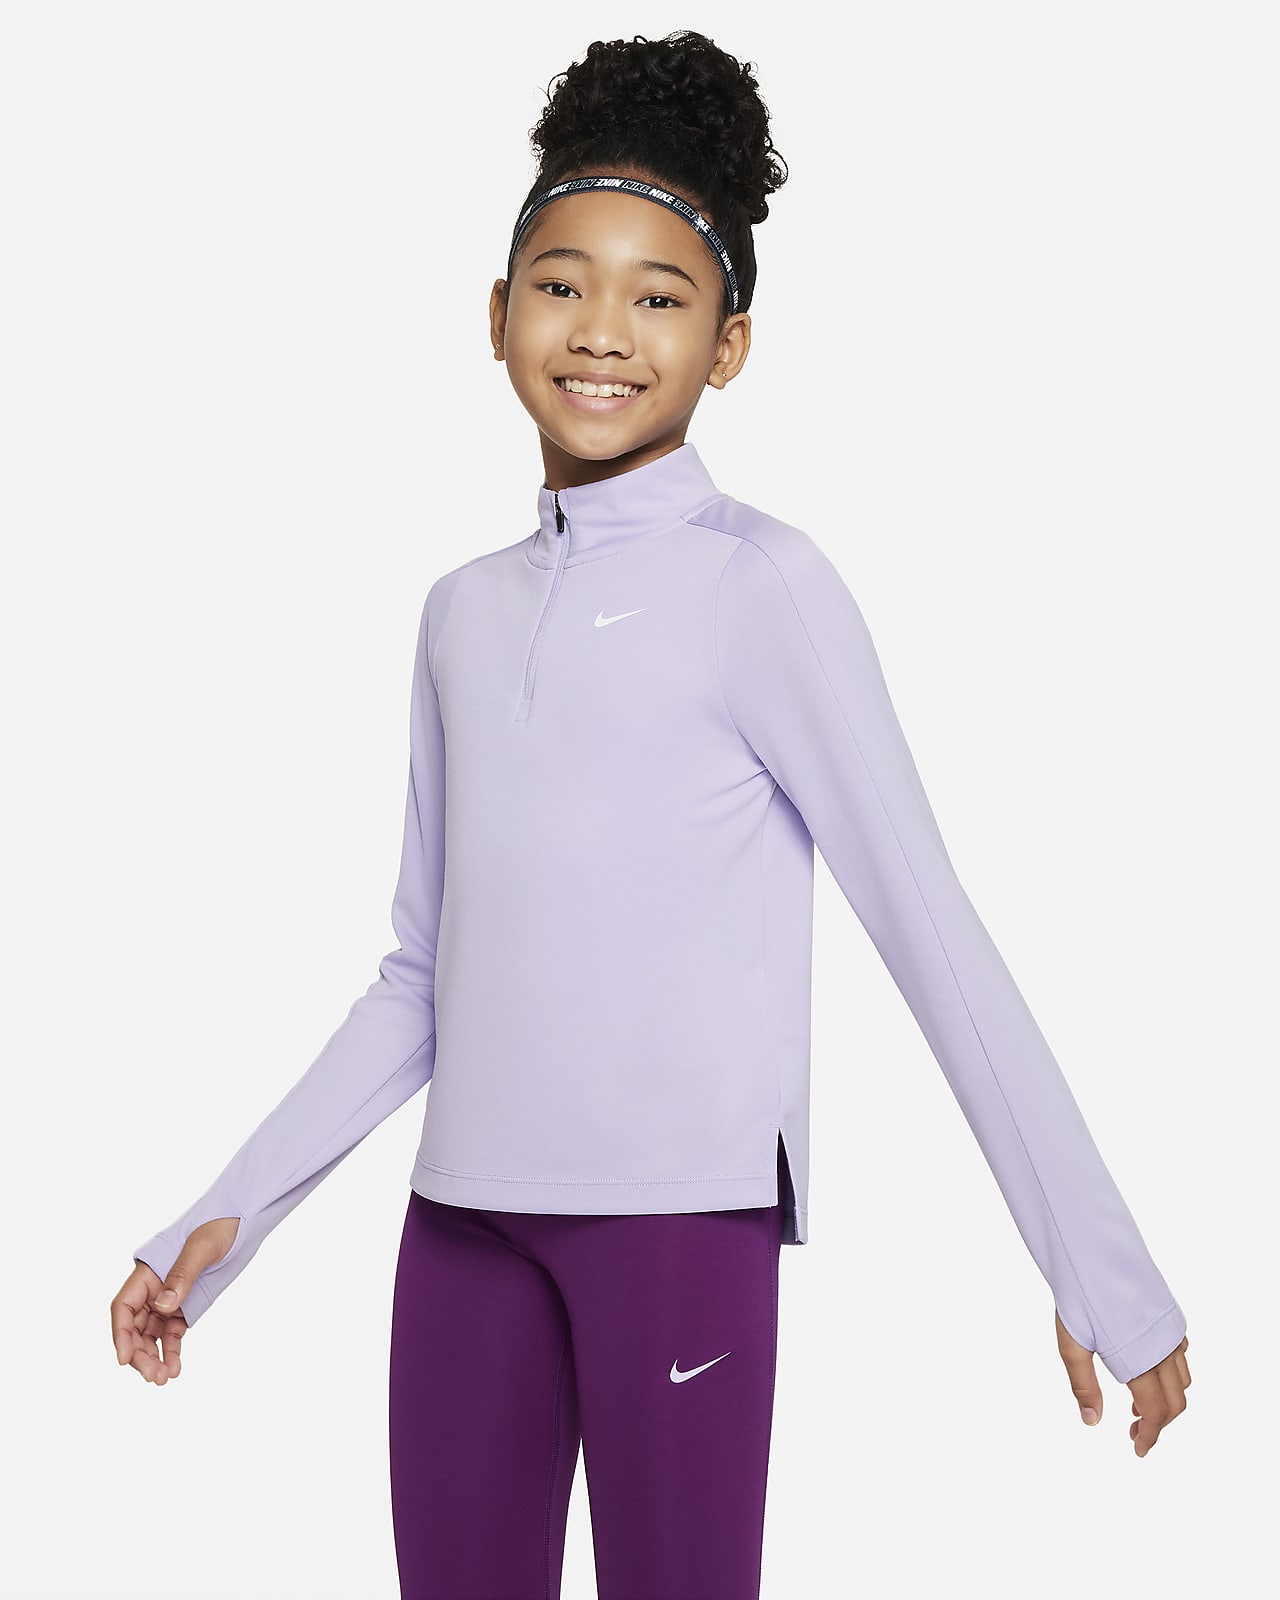 Nike Dri-FIT Longsleeve mit Halbreißverschluss für ältere Kinder (Mädchen)